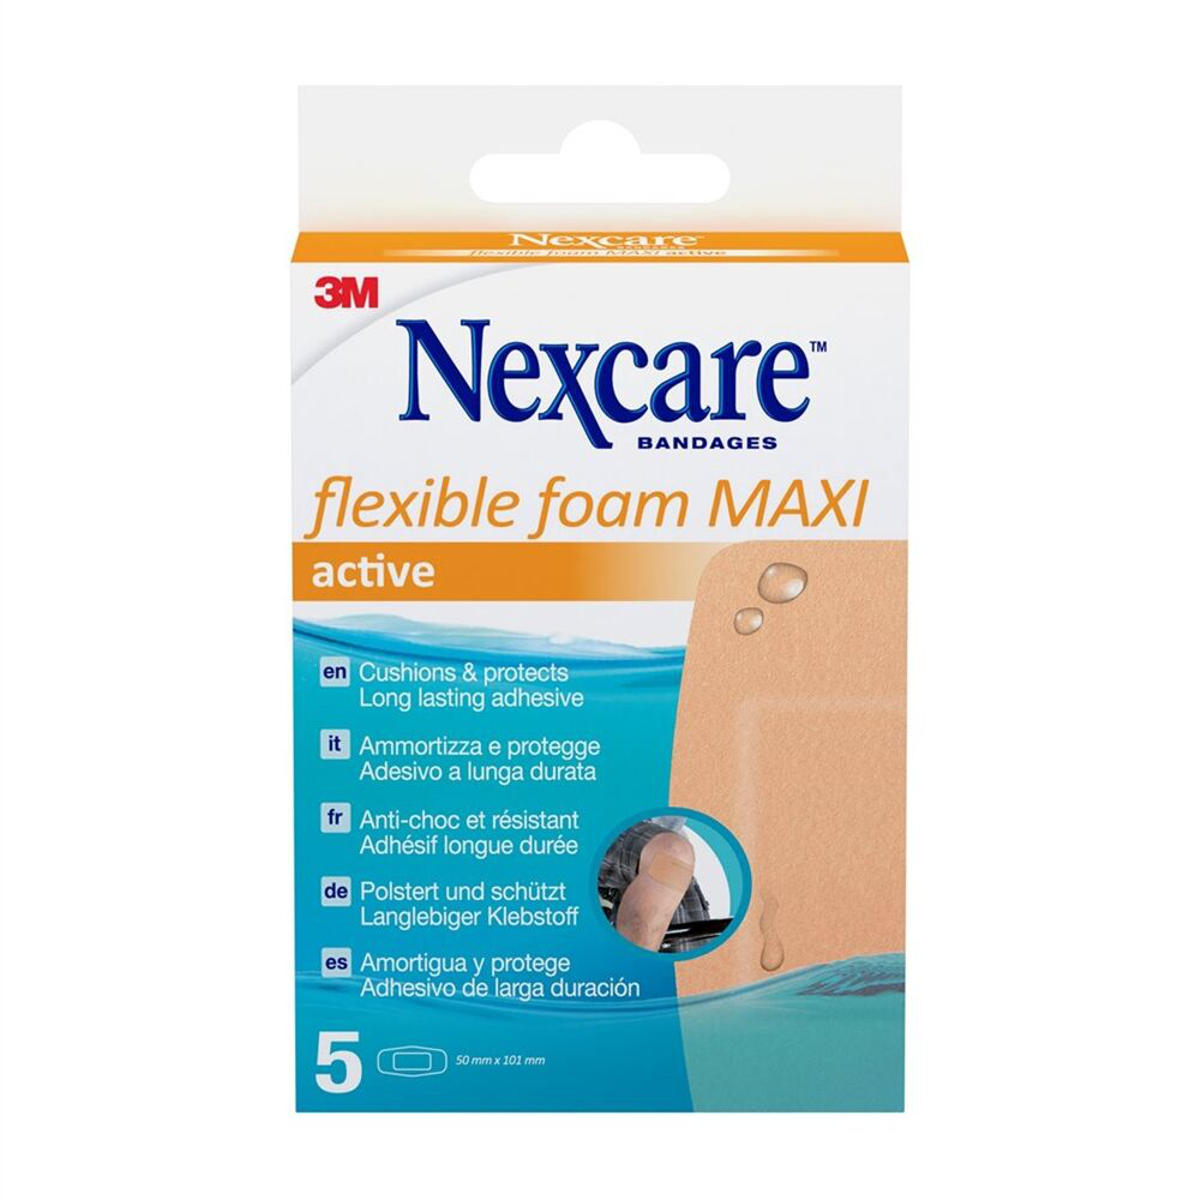 3M Nexcare Bandages active - Polstert und Schützt